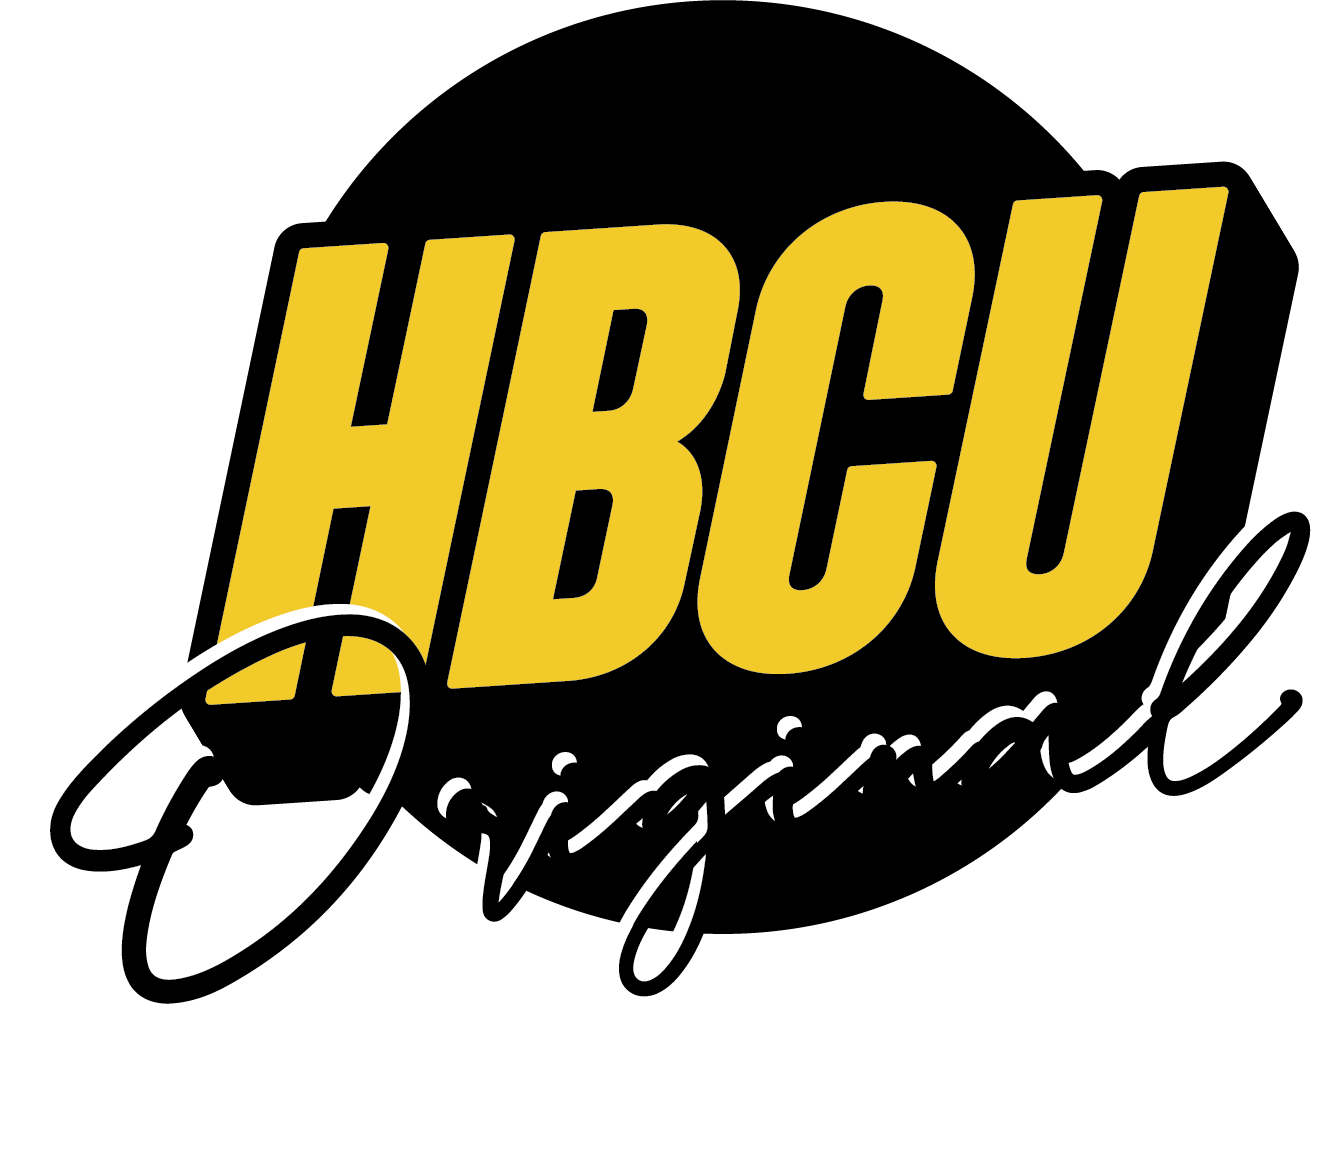 HBCU ORIGINAL